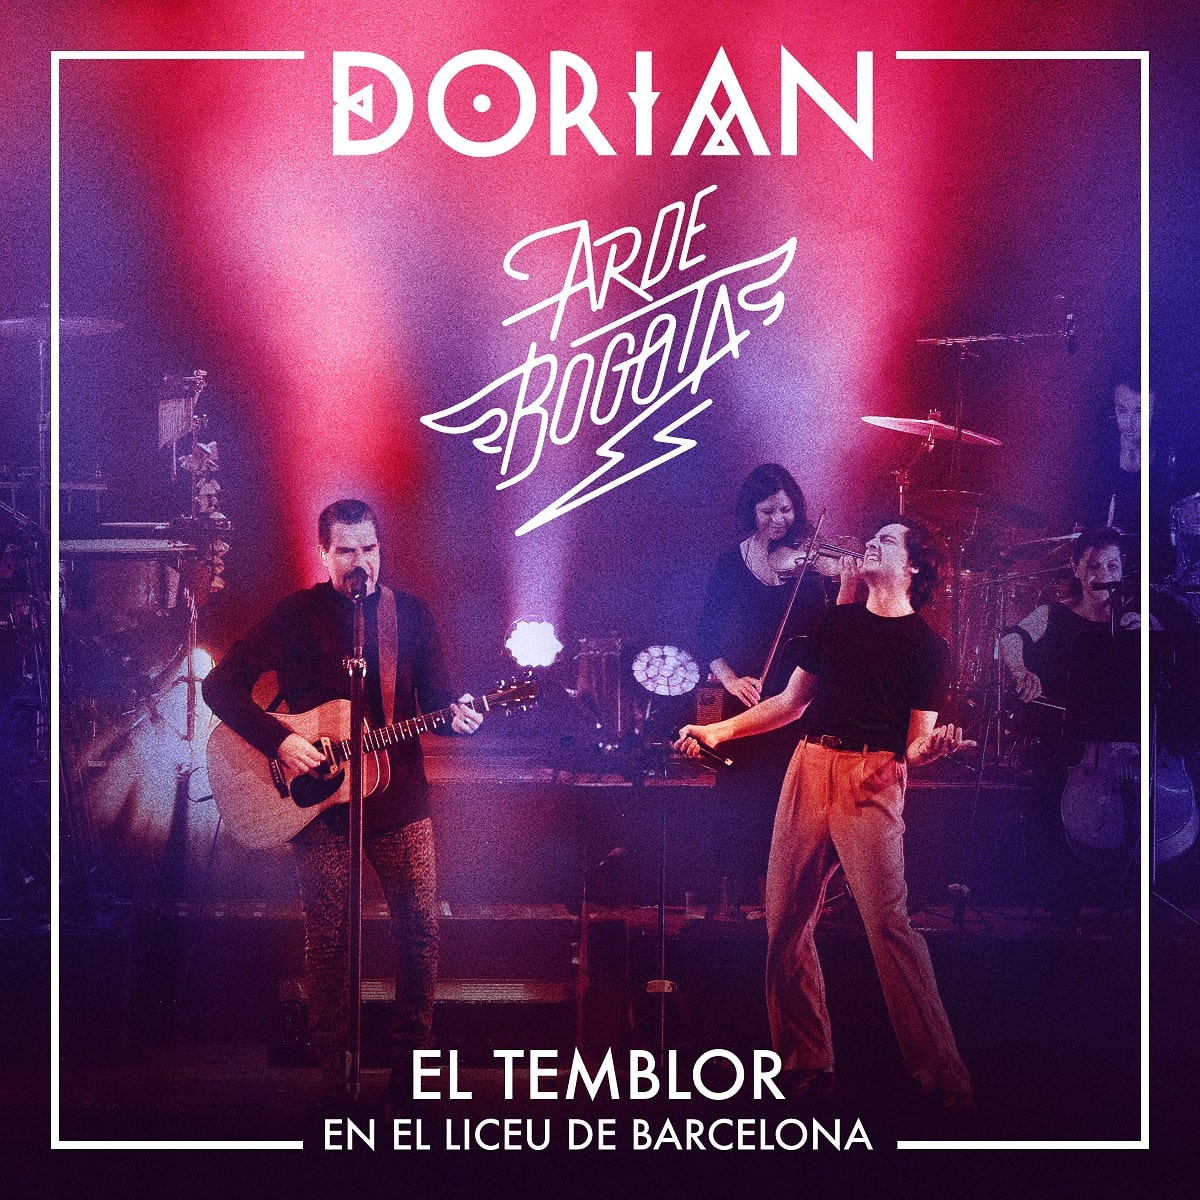 Tapa de "El temblor", single de Dorian